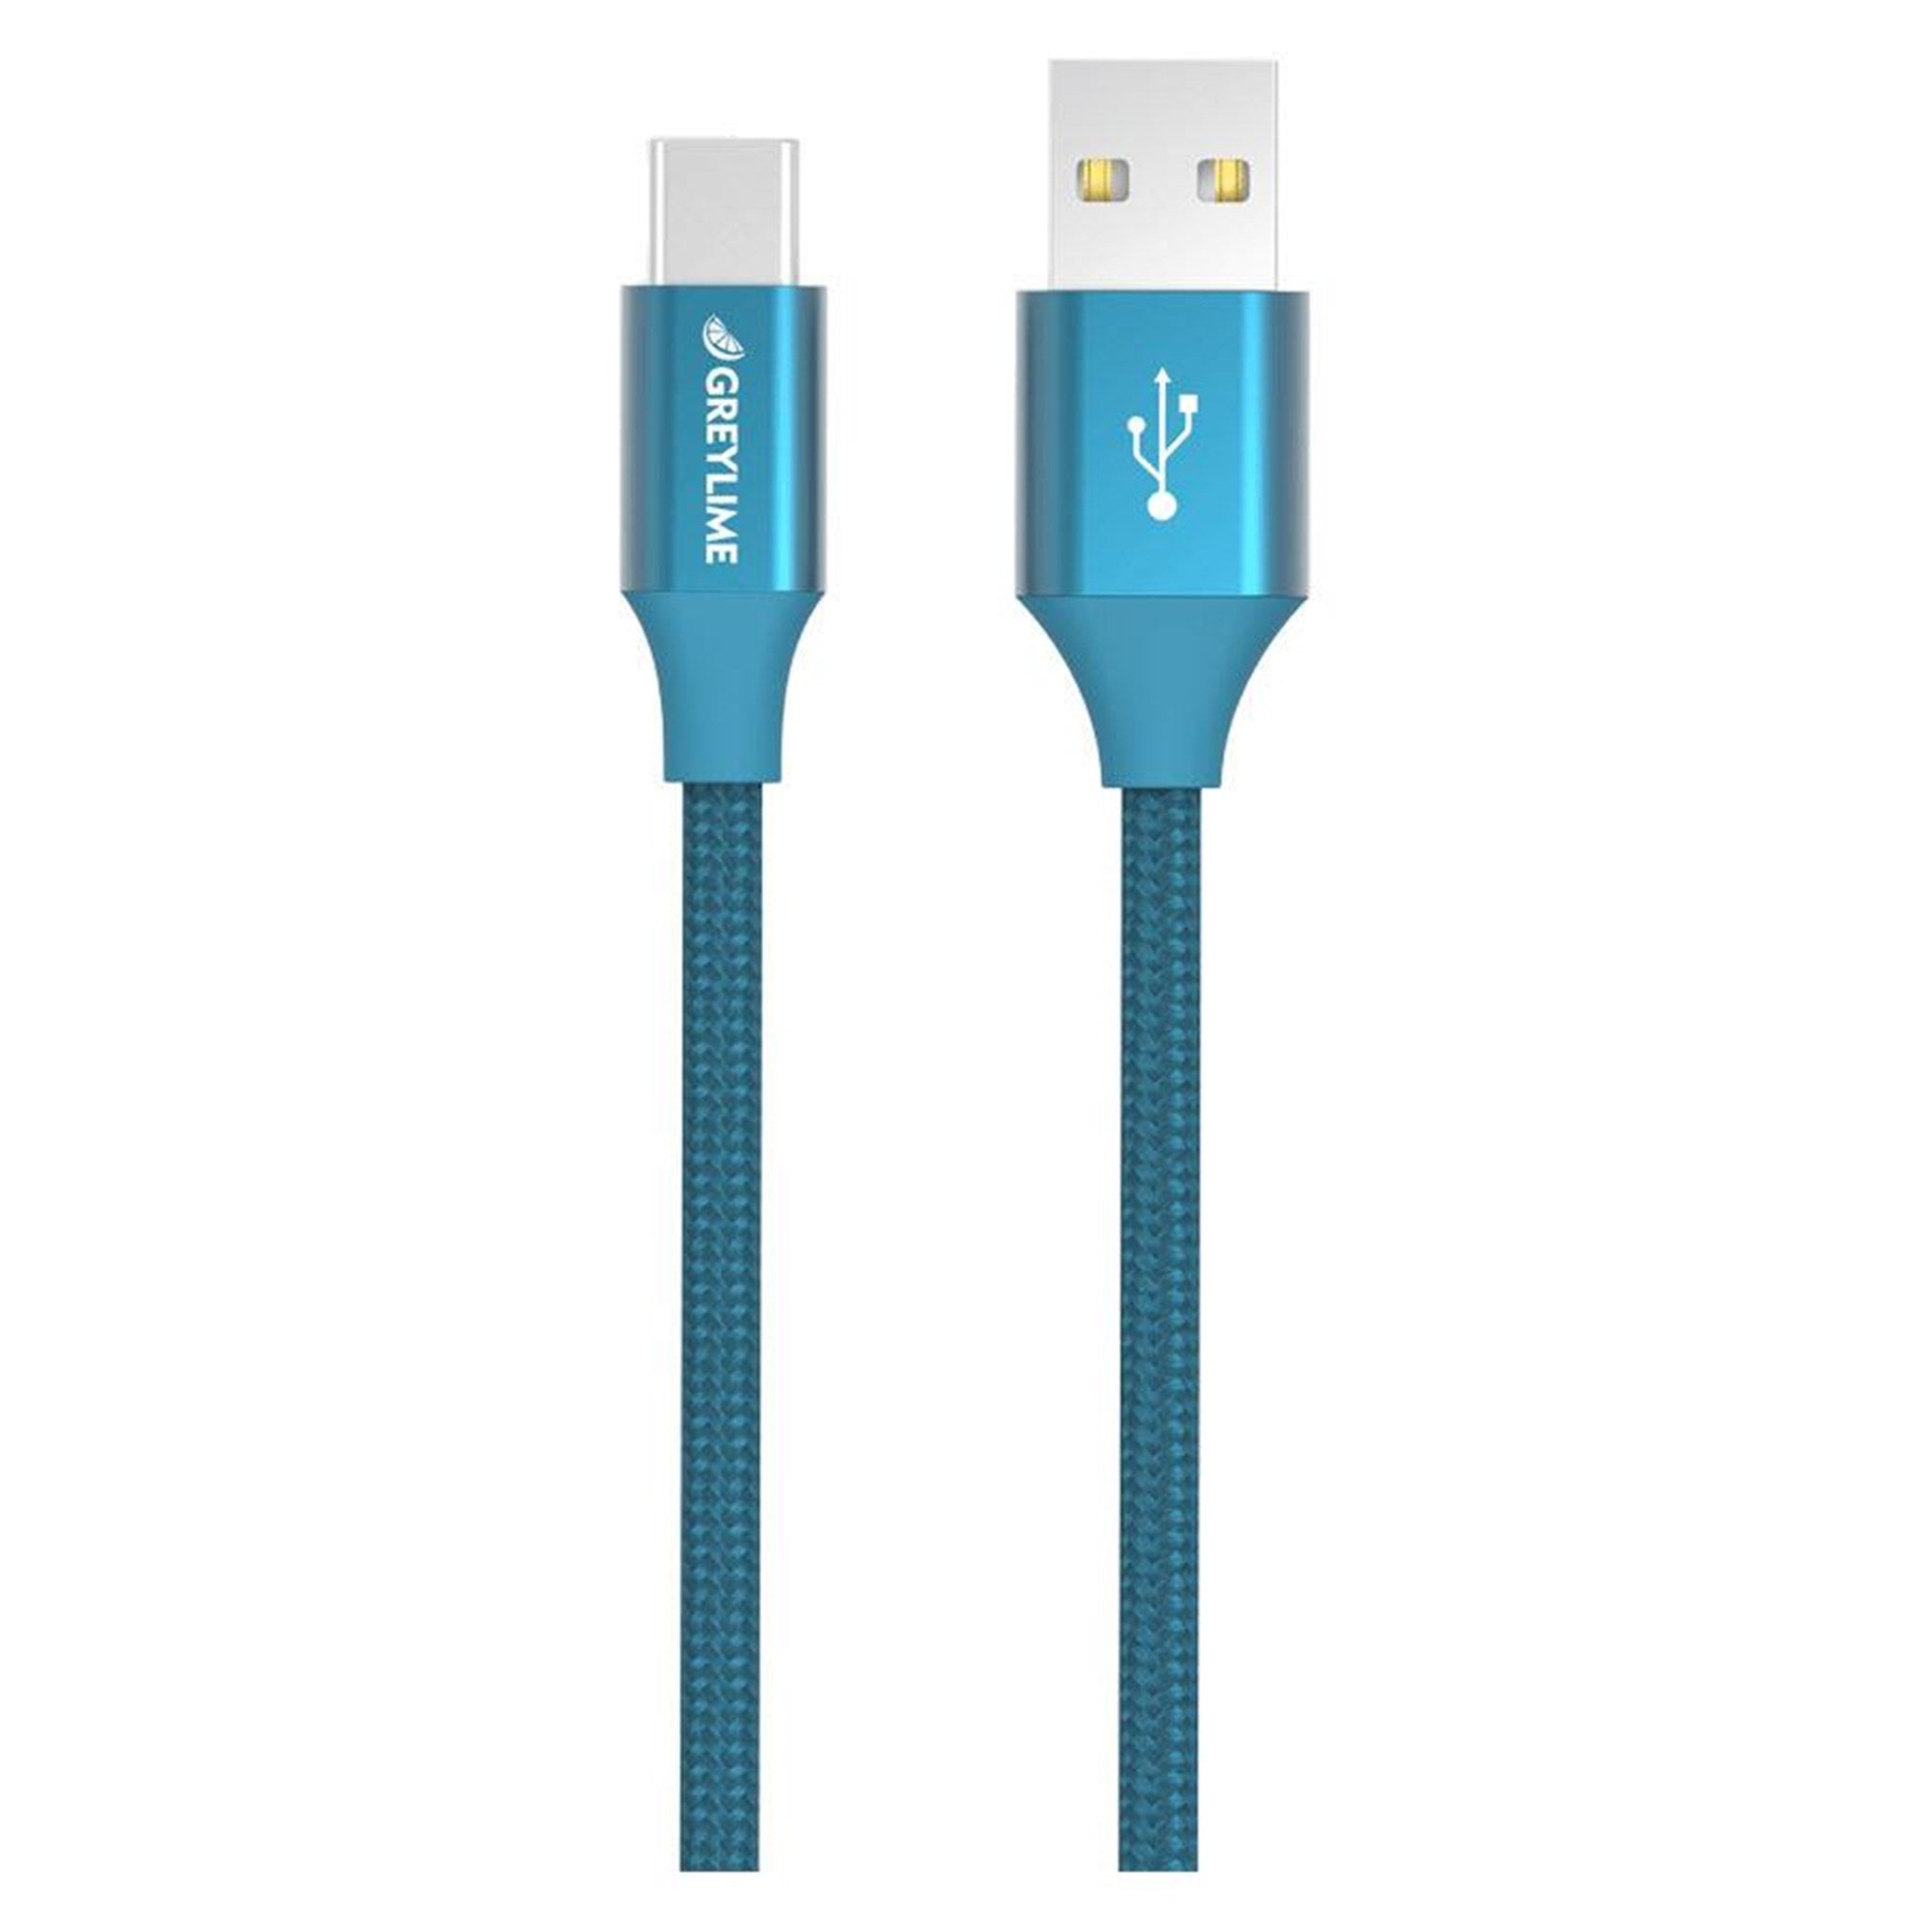 Billede af GreyLime Braided USB-A til USB-C Kabel Blå 2 m hos GreyLime